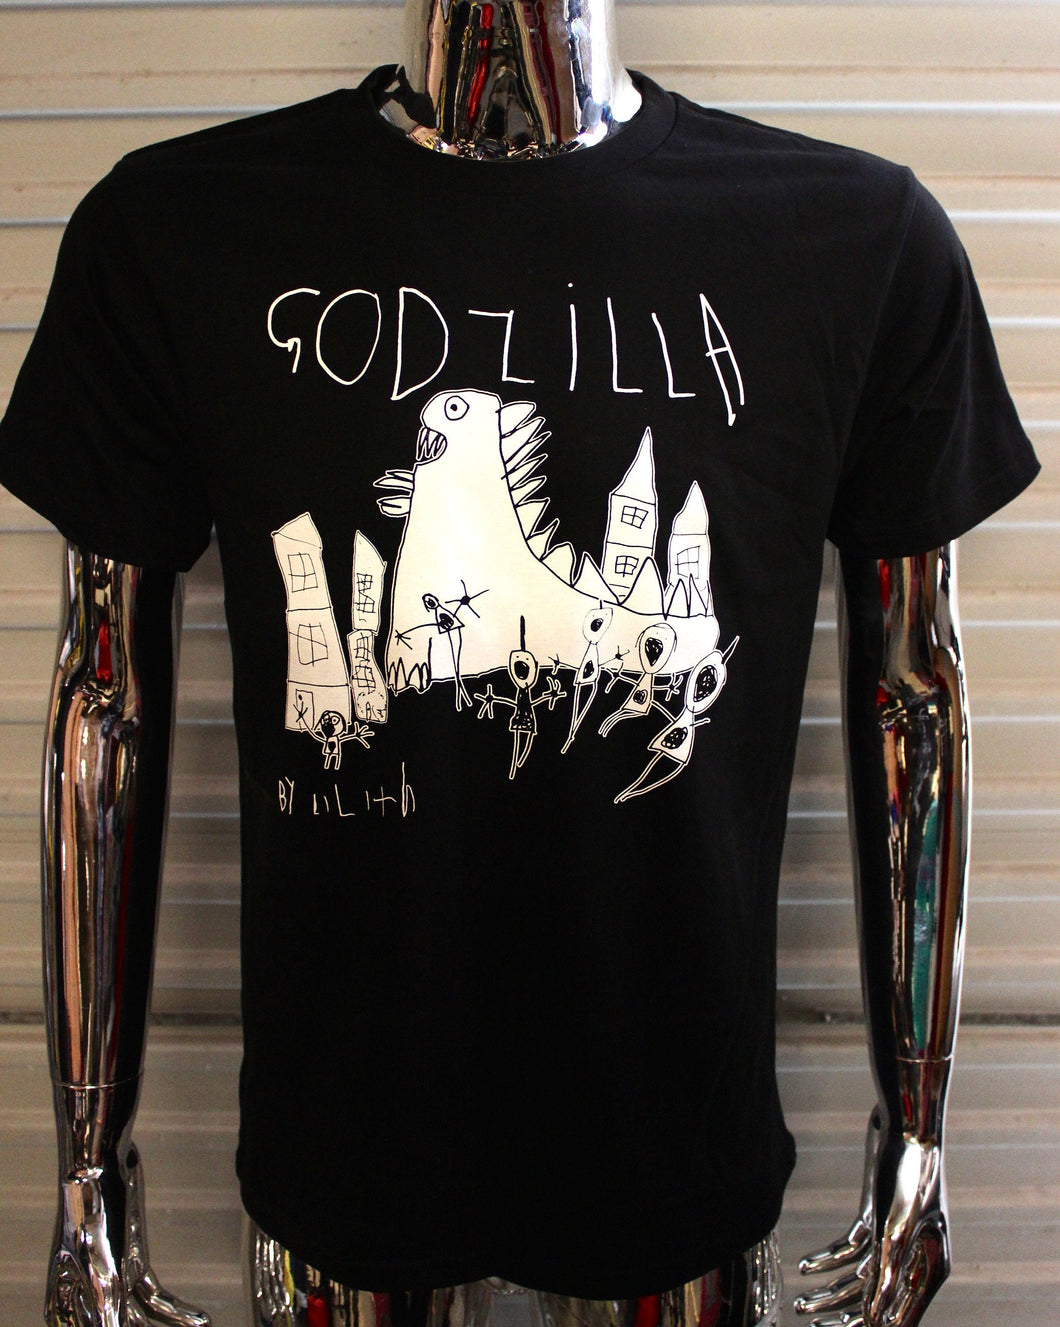 Godzilla by Lilith T-shirt